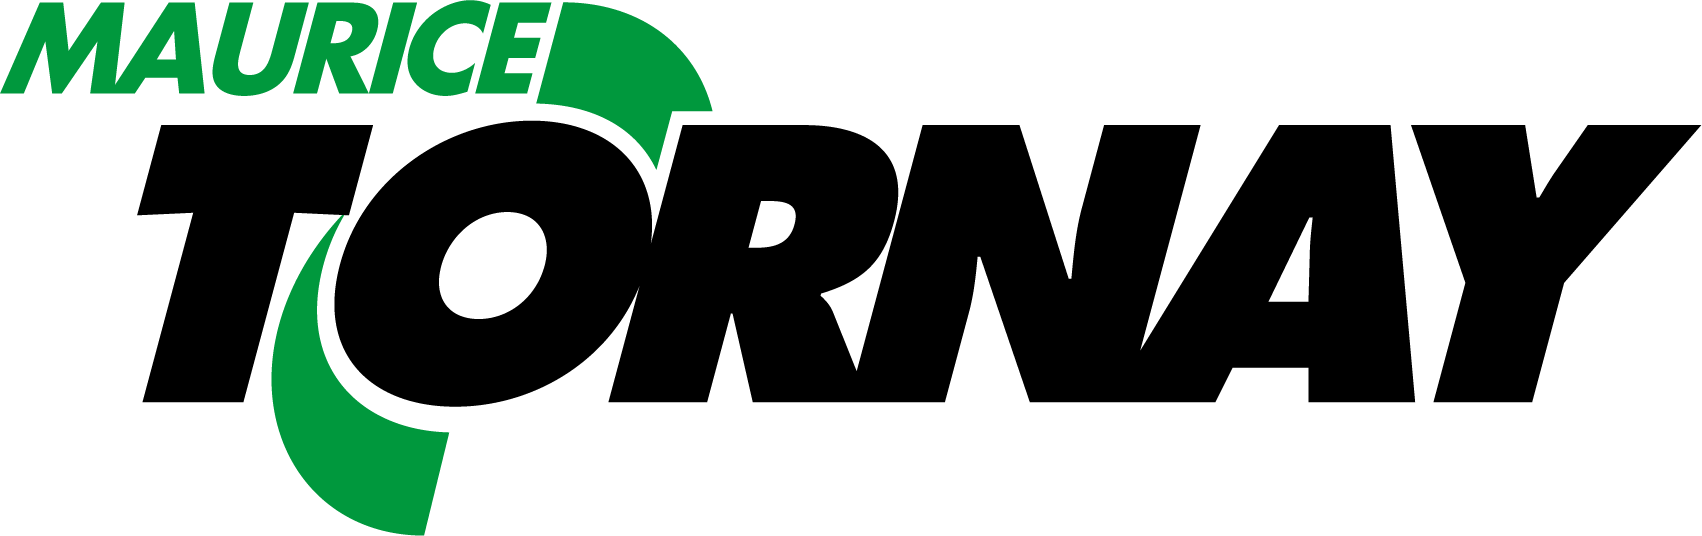 Maurice-Tornay-sa-logo